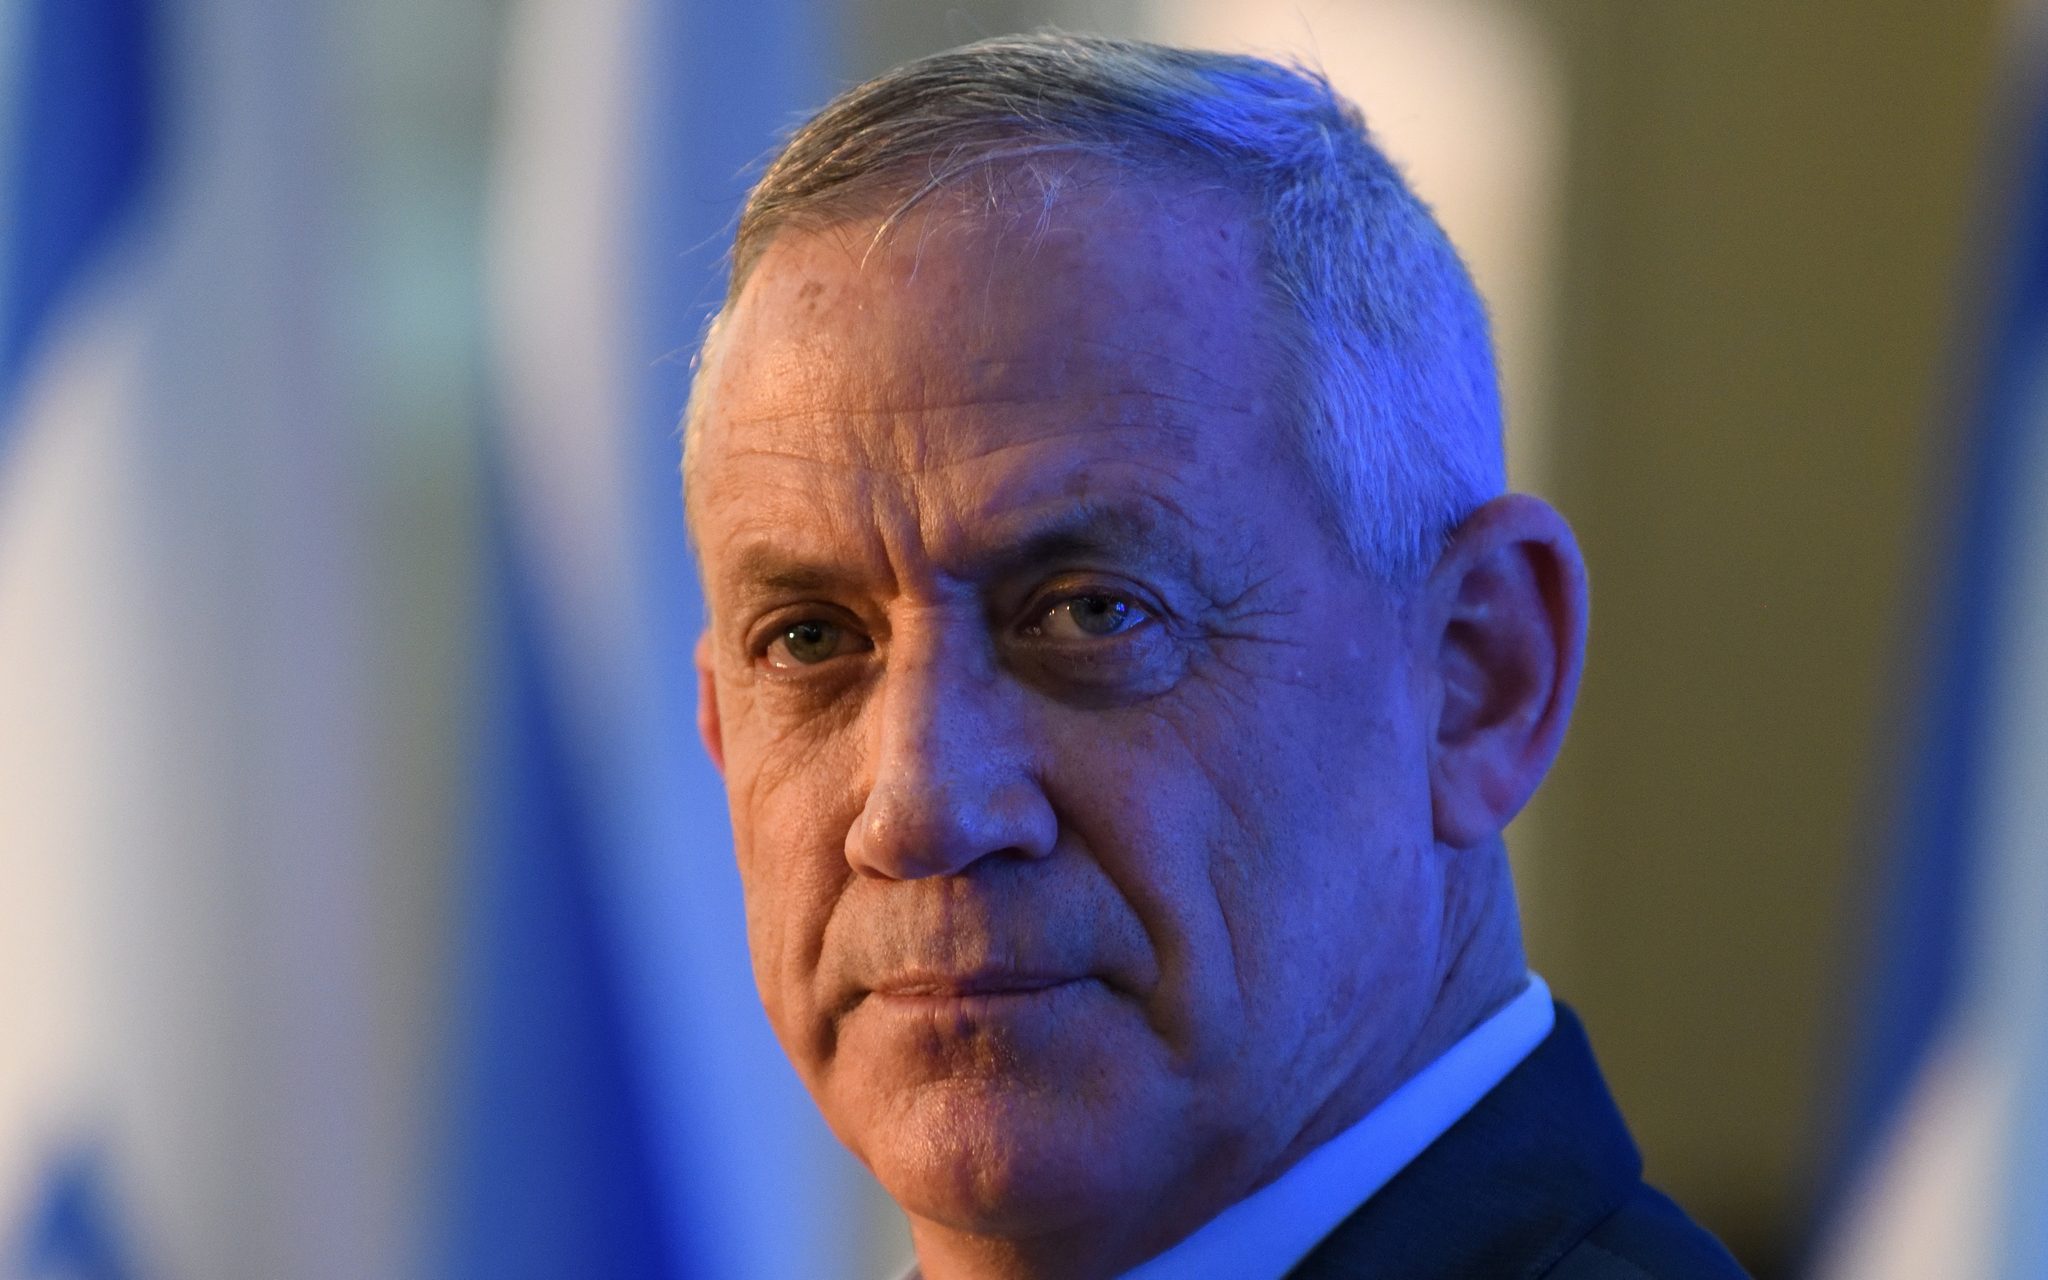 غانتس: دولة إسرائيل والجيش الإسرائيلي سيواصلان عملياتهما